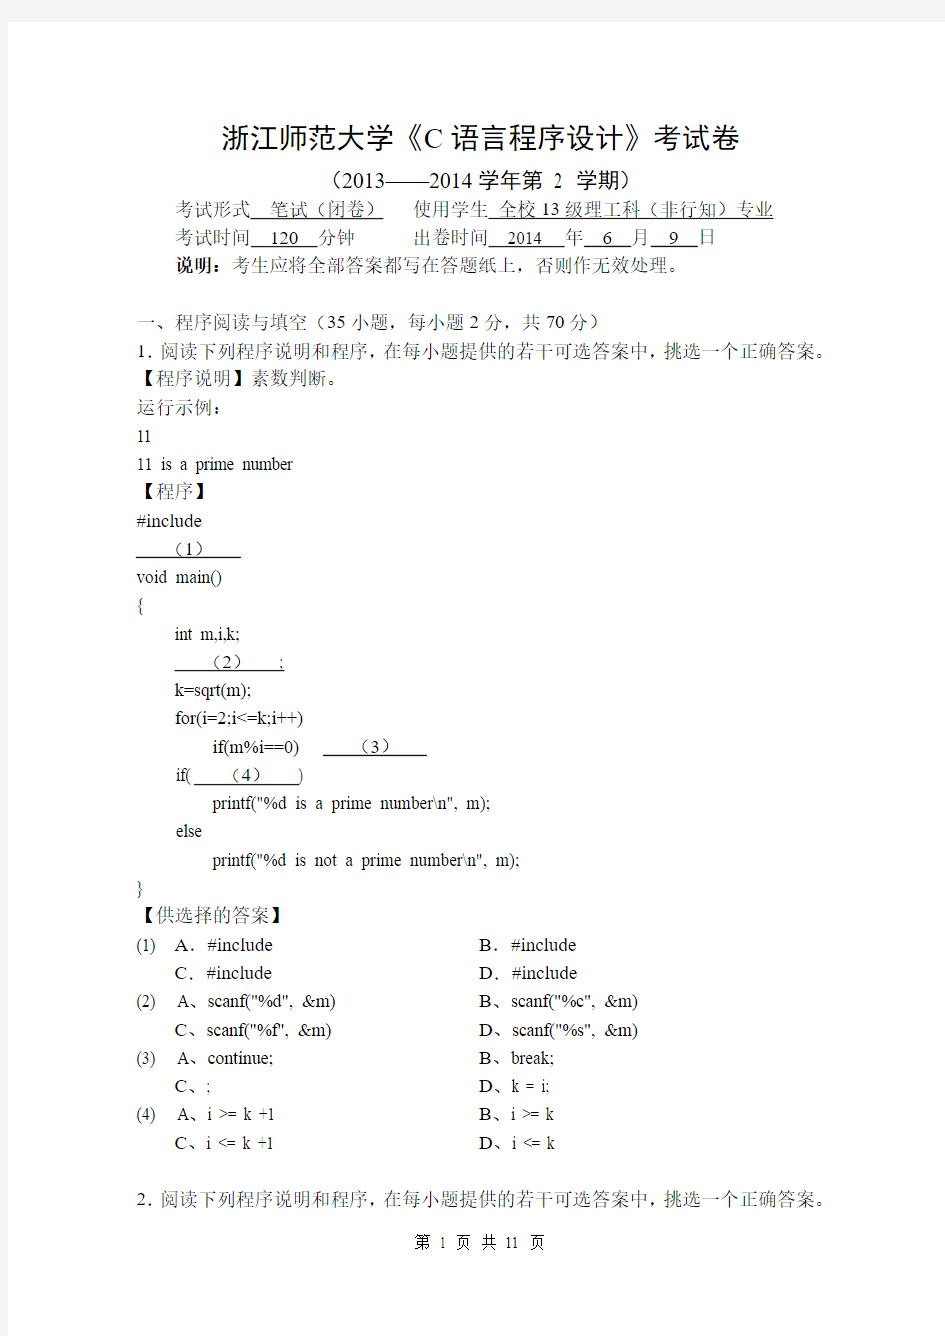 2013-2014第二学年秋浙江师范大学c语言程序设计试卷 - (附参考答案)